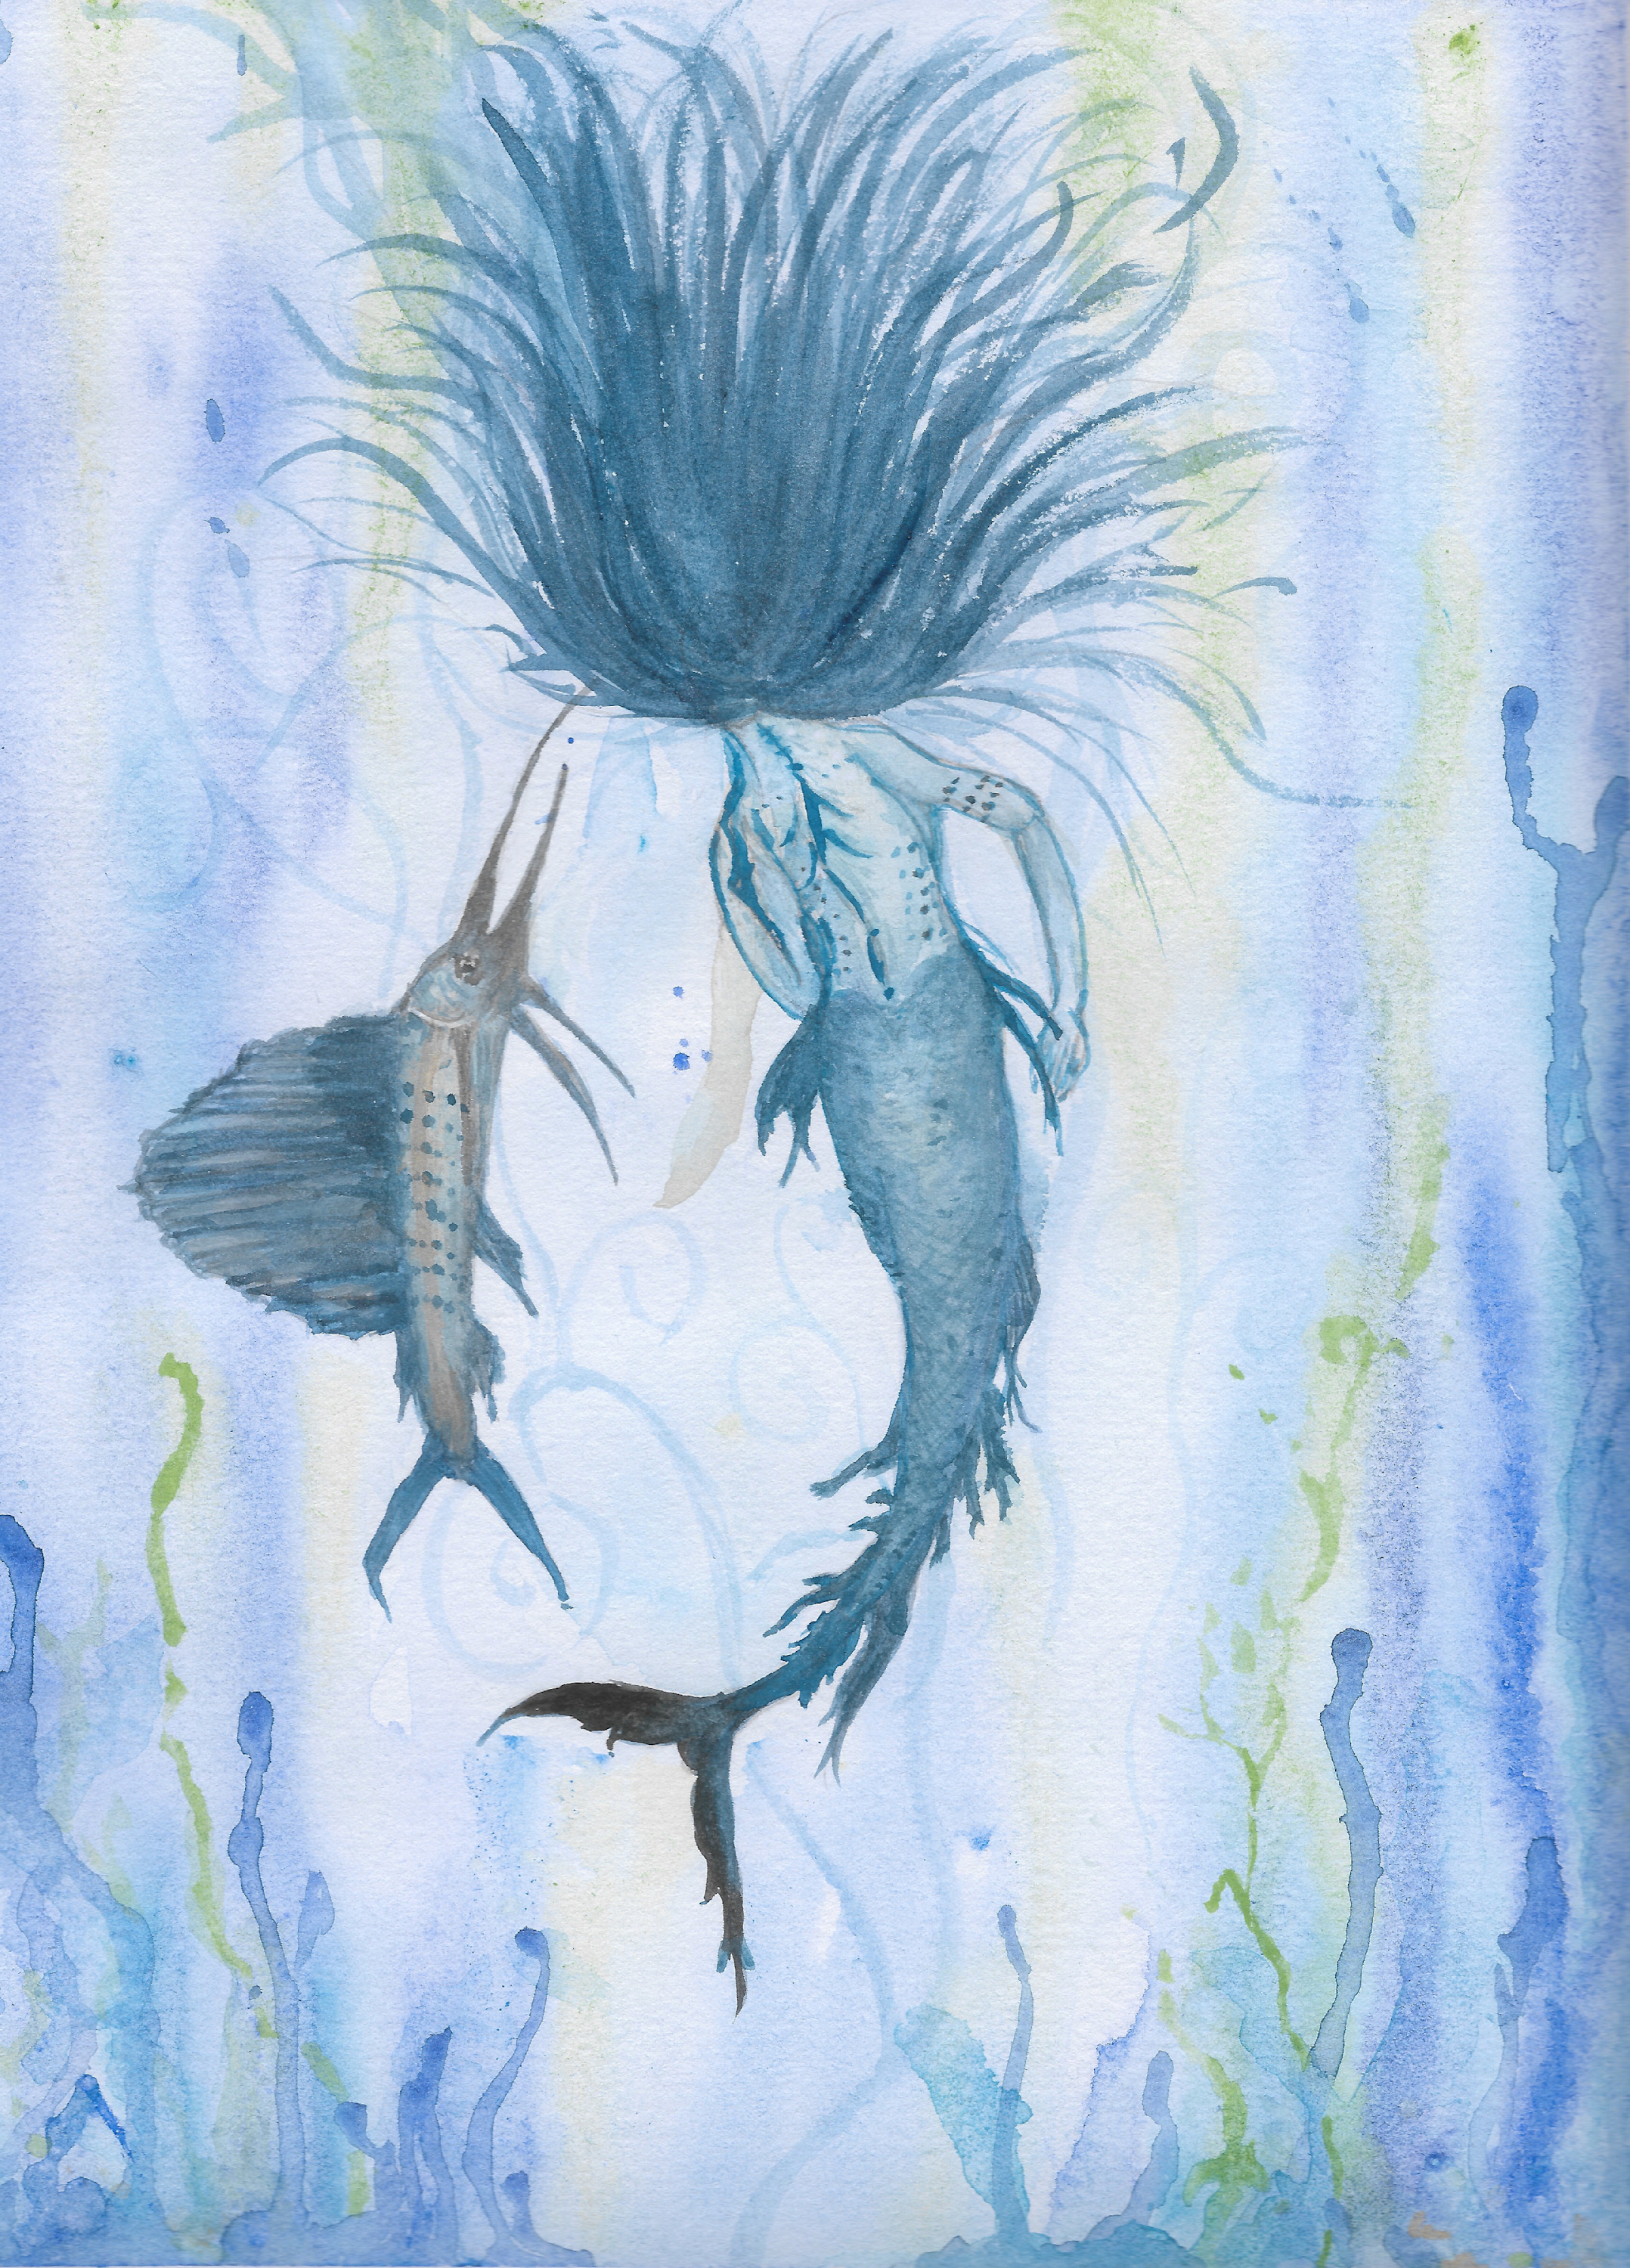 Swordfish mermaid xpazgg